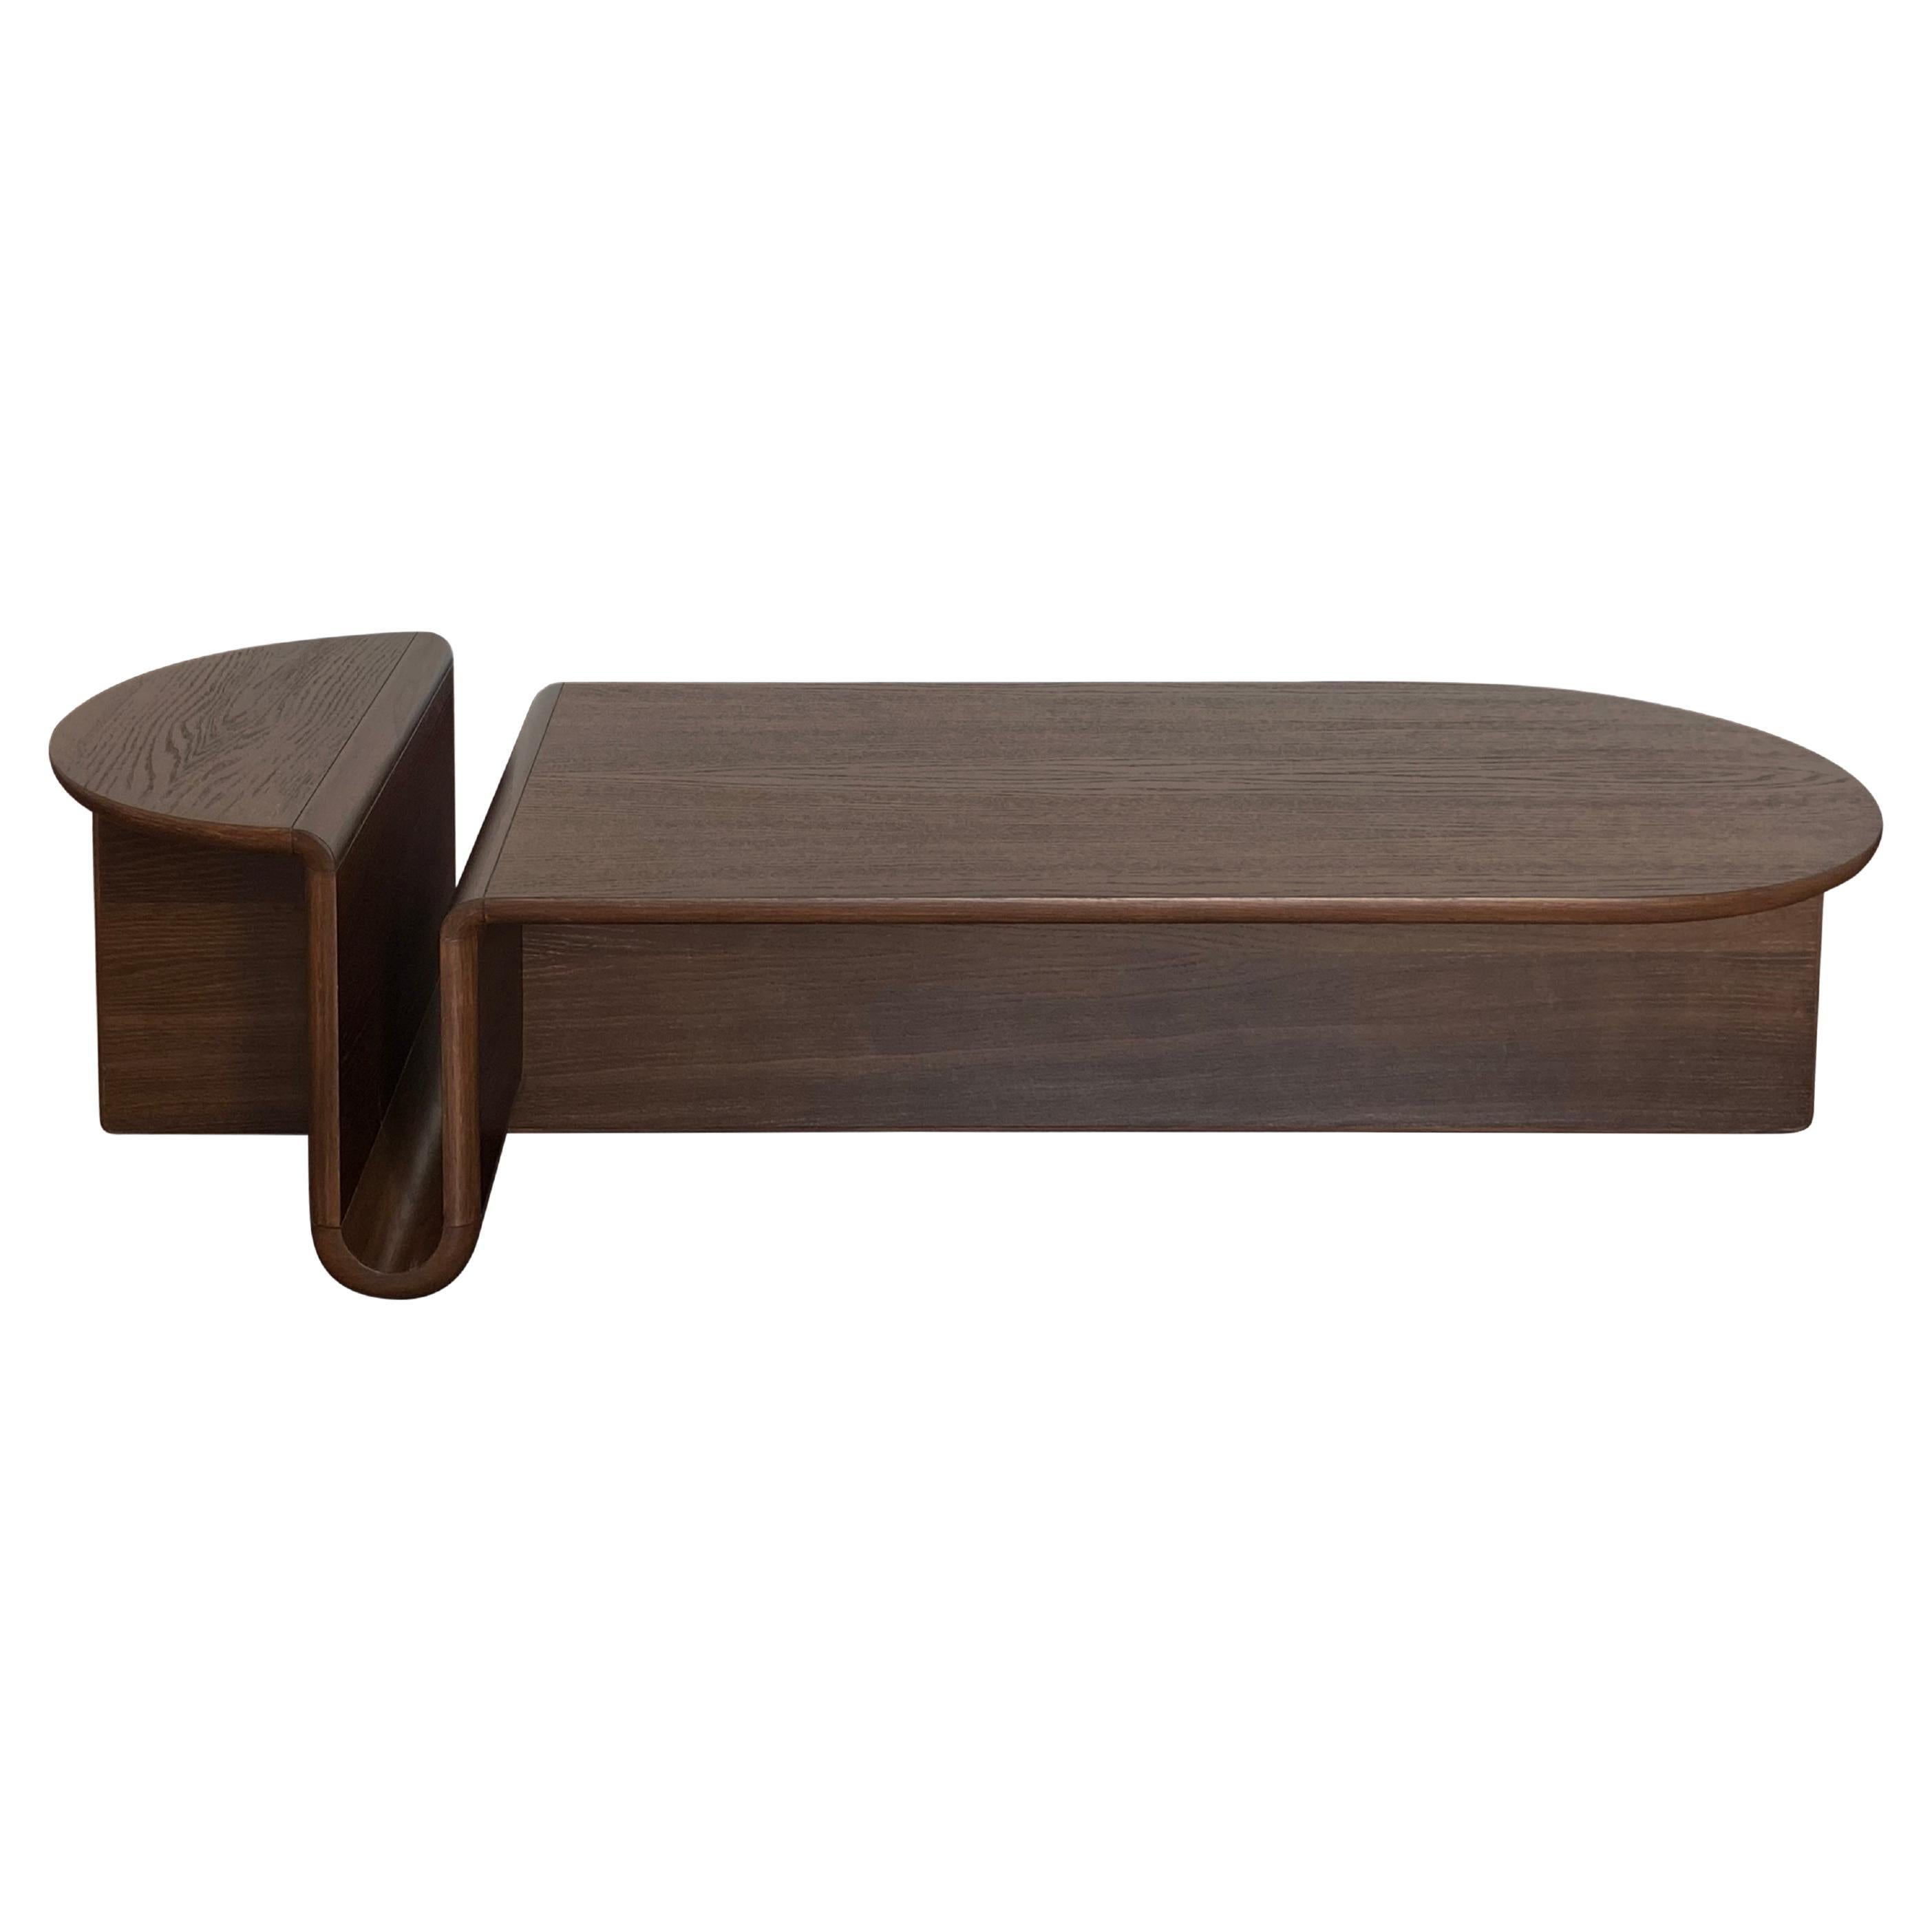 Table basse ovale Kanyon, sculpture contemporaine en bois fumé, en stock en vente